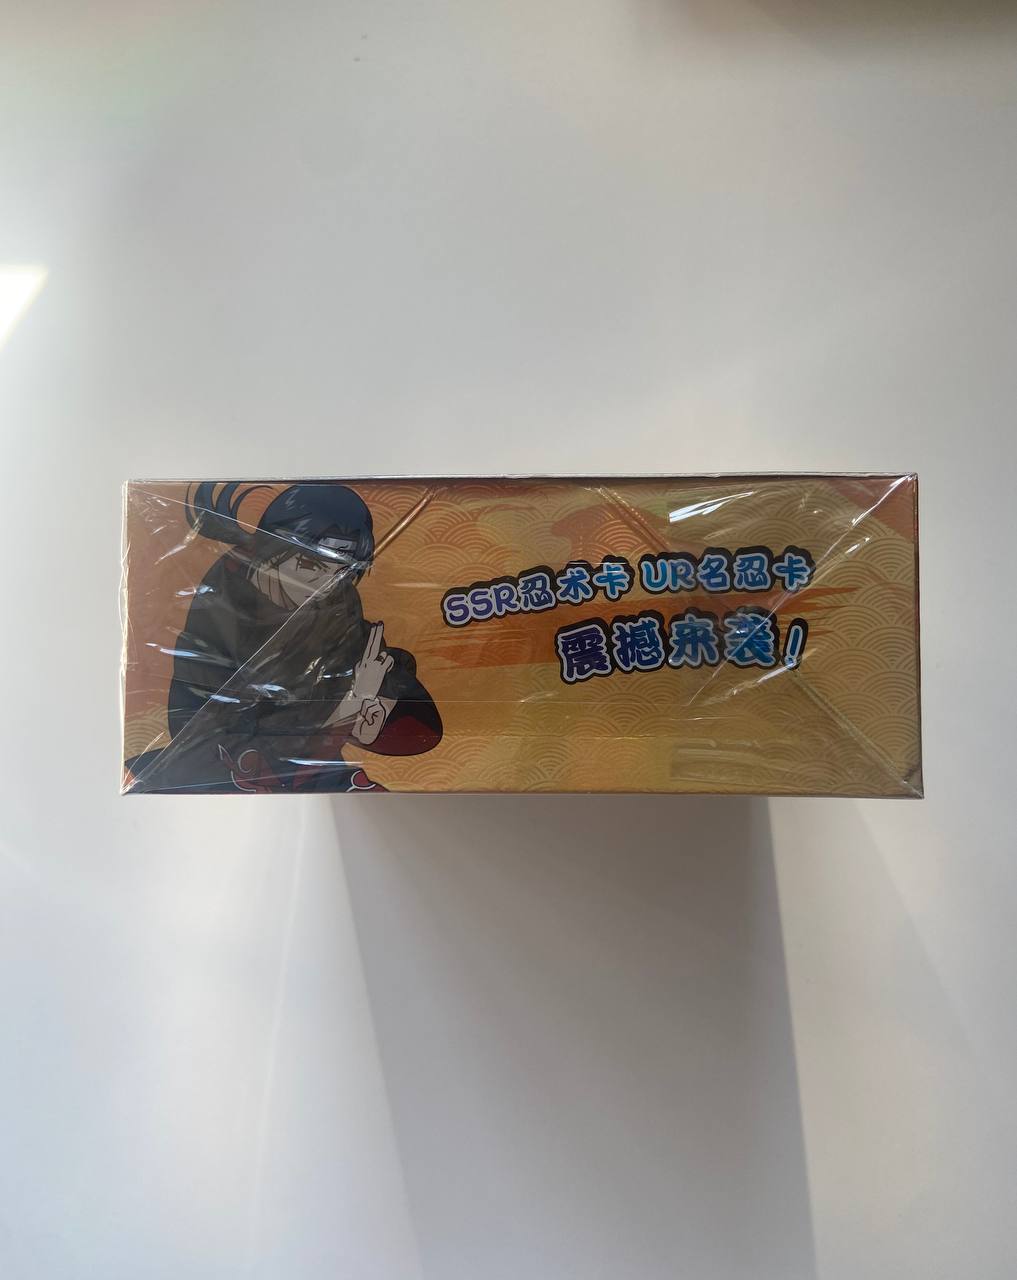 Naruto Kayou Tier 2 Wave 1 Display Card Box Sealed